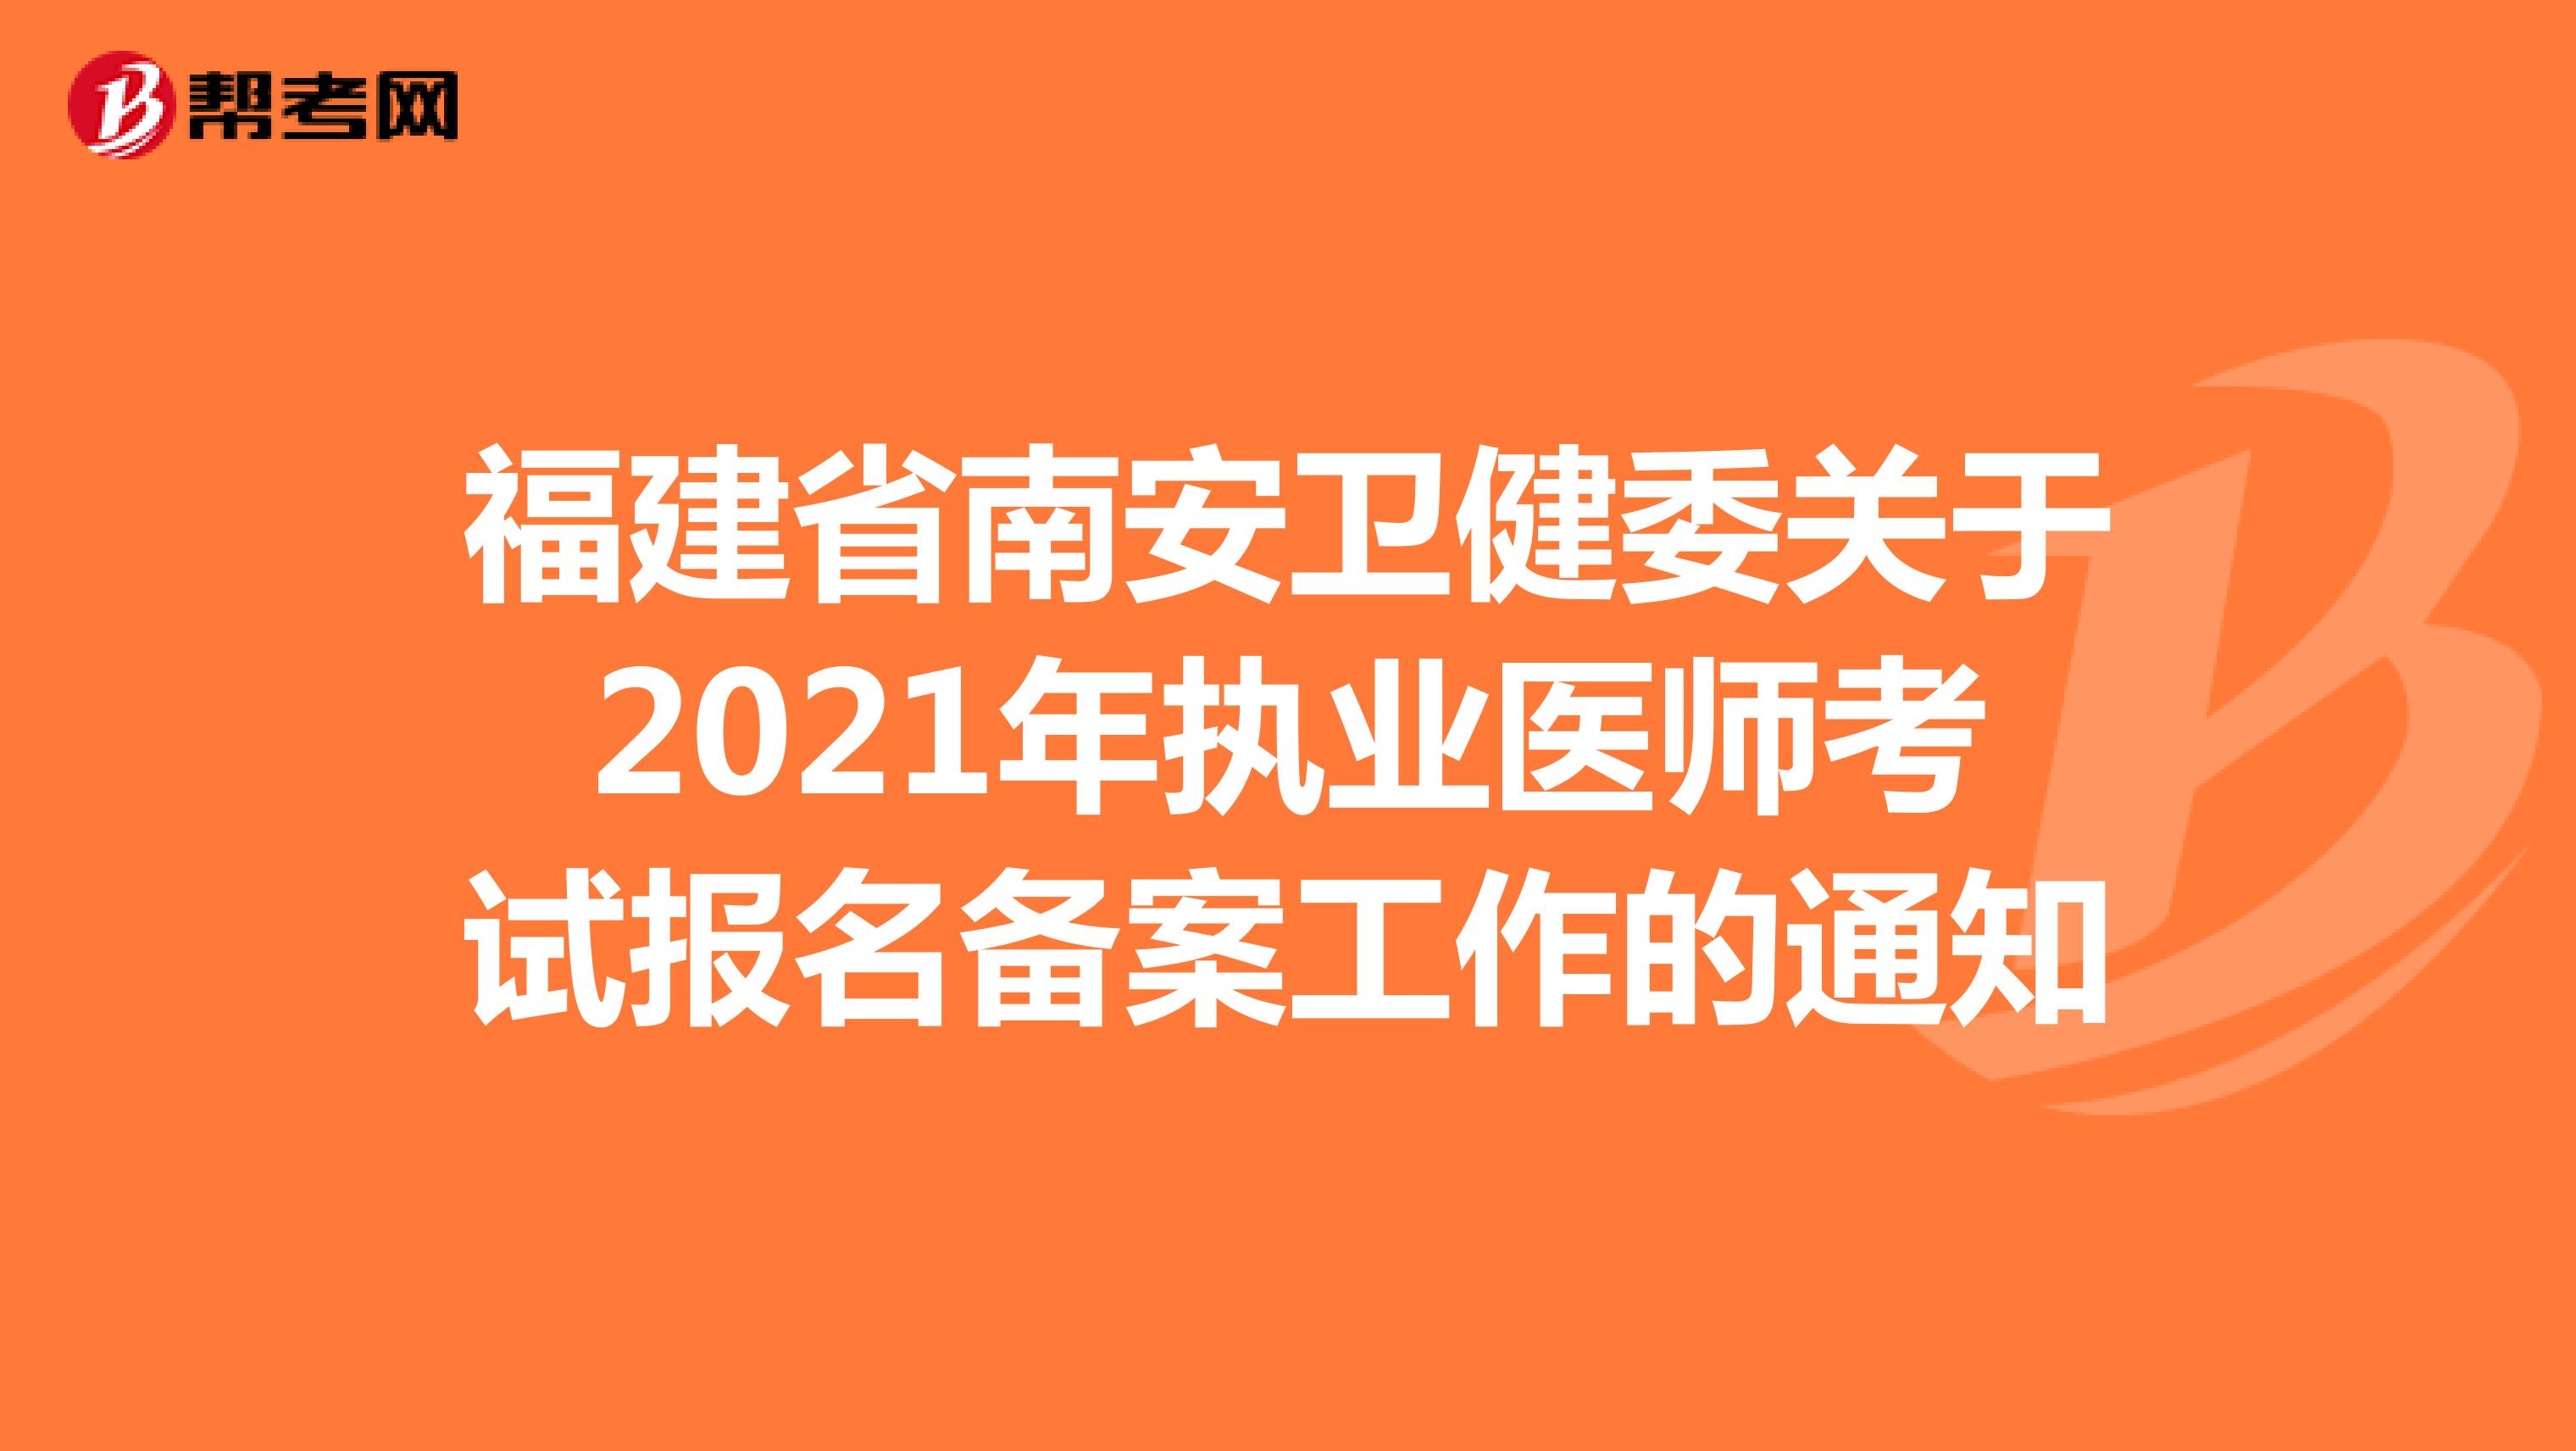 福建省南安卫健委关于2021年执业医师考试报名备案工作的通知